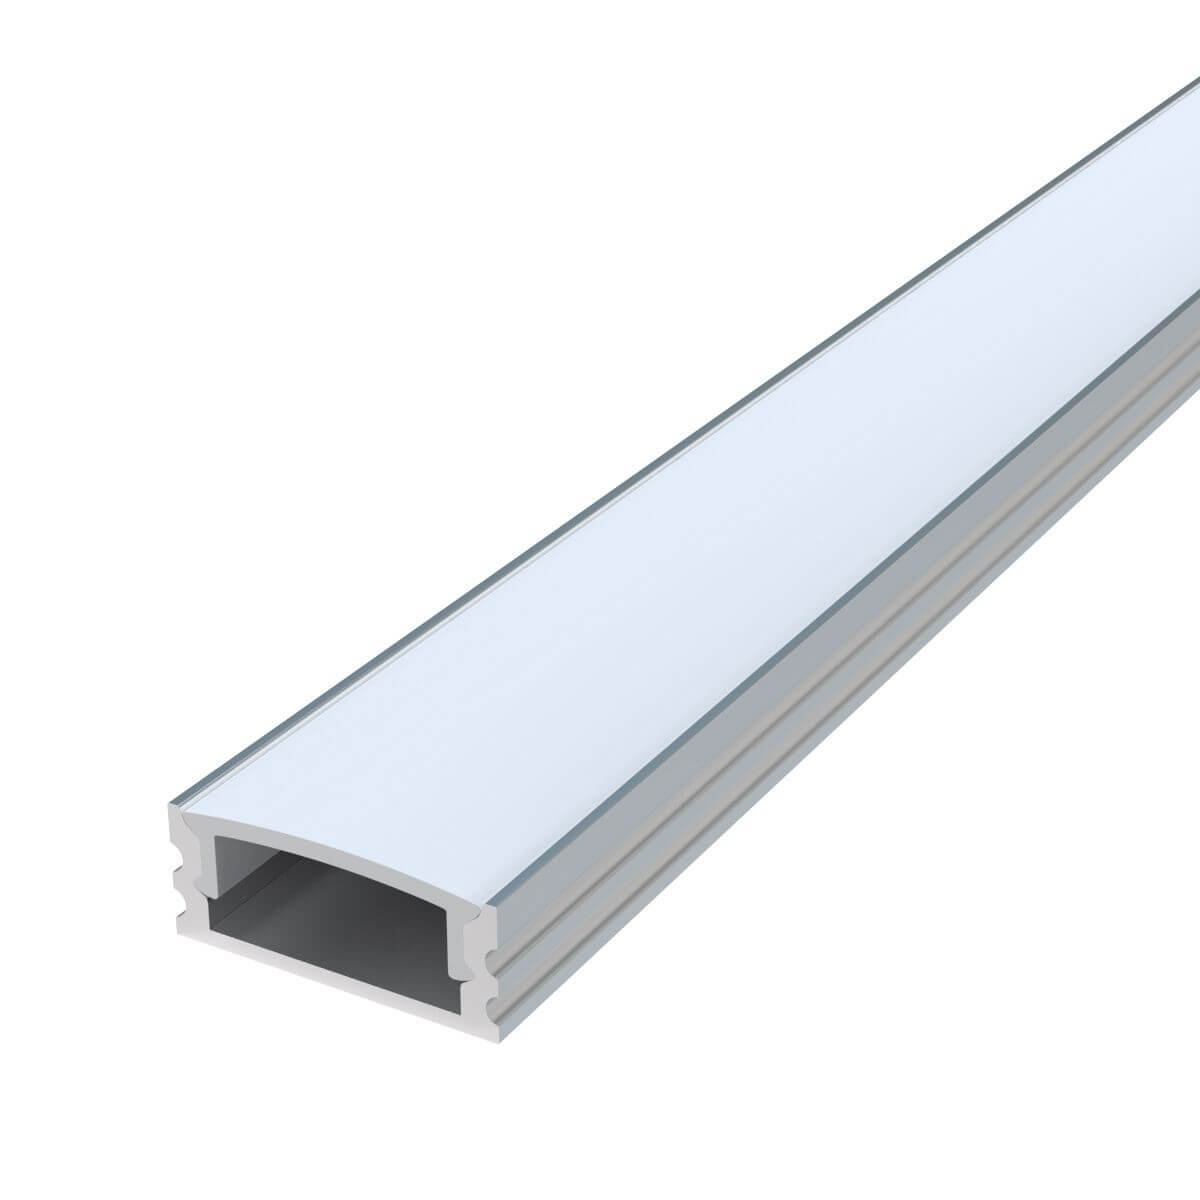 Image of 2m, Shallow 7mm Surface Mounted LED Aluminium Profile